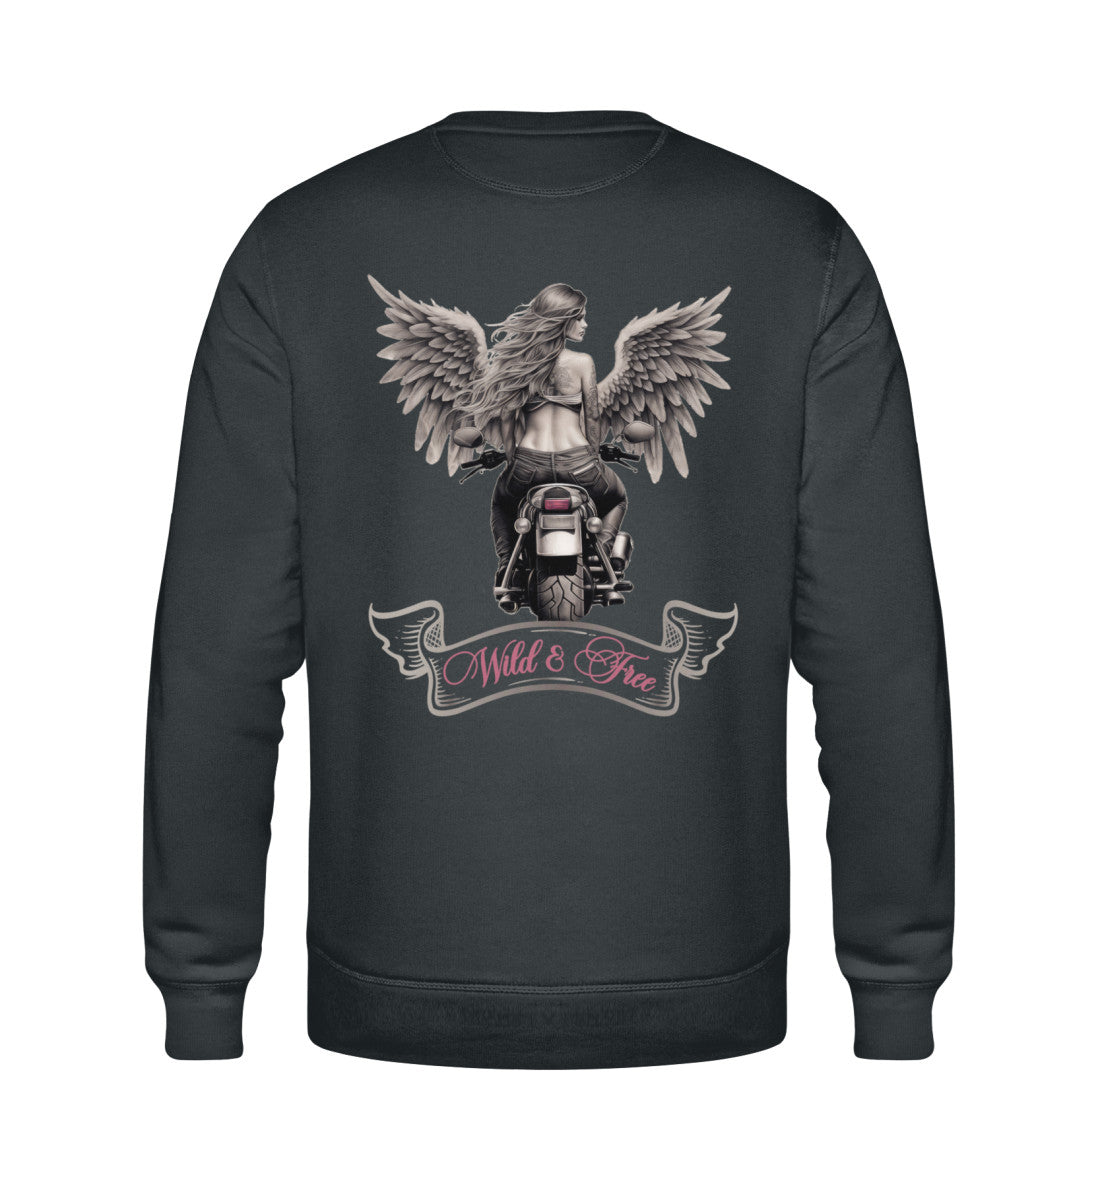 Ein Bikerin Sweatshirt für Motorradfahrerinnen von Wingbikers mit dem Aufdruck, Wild & Free mit Flügeln, als Back Print, in dunkelgrau. 